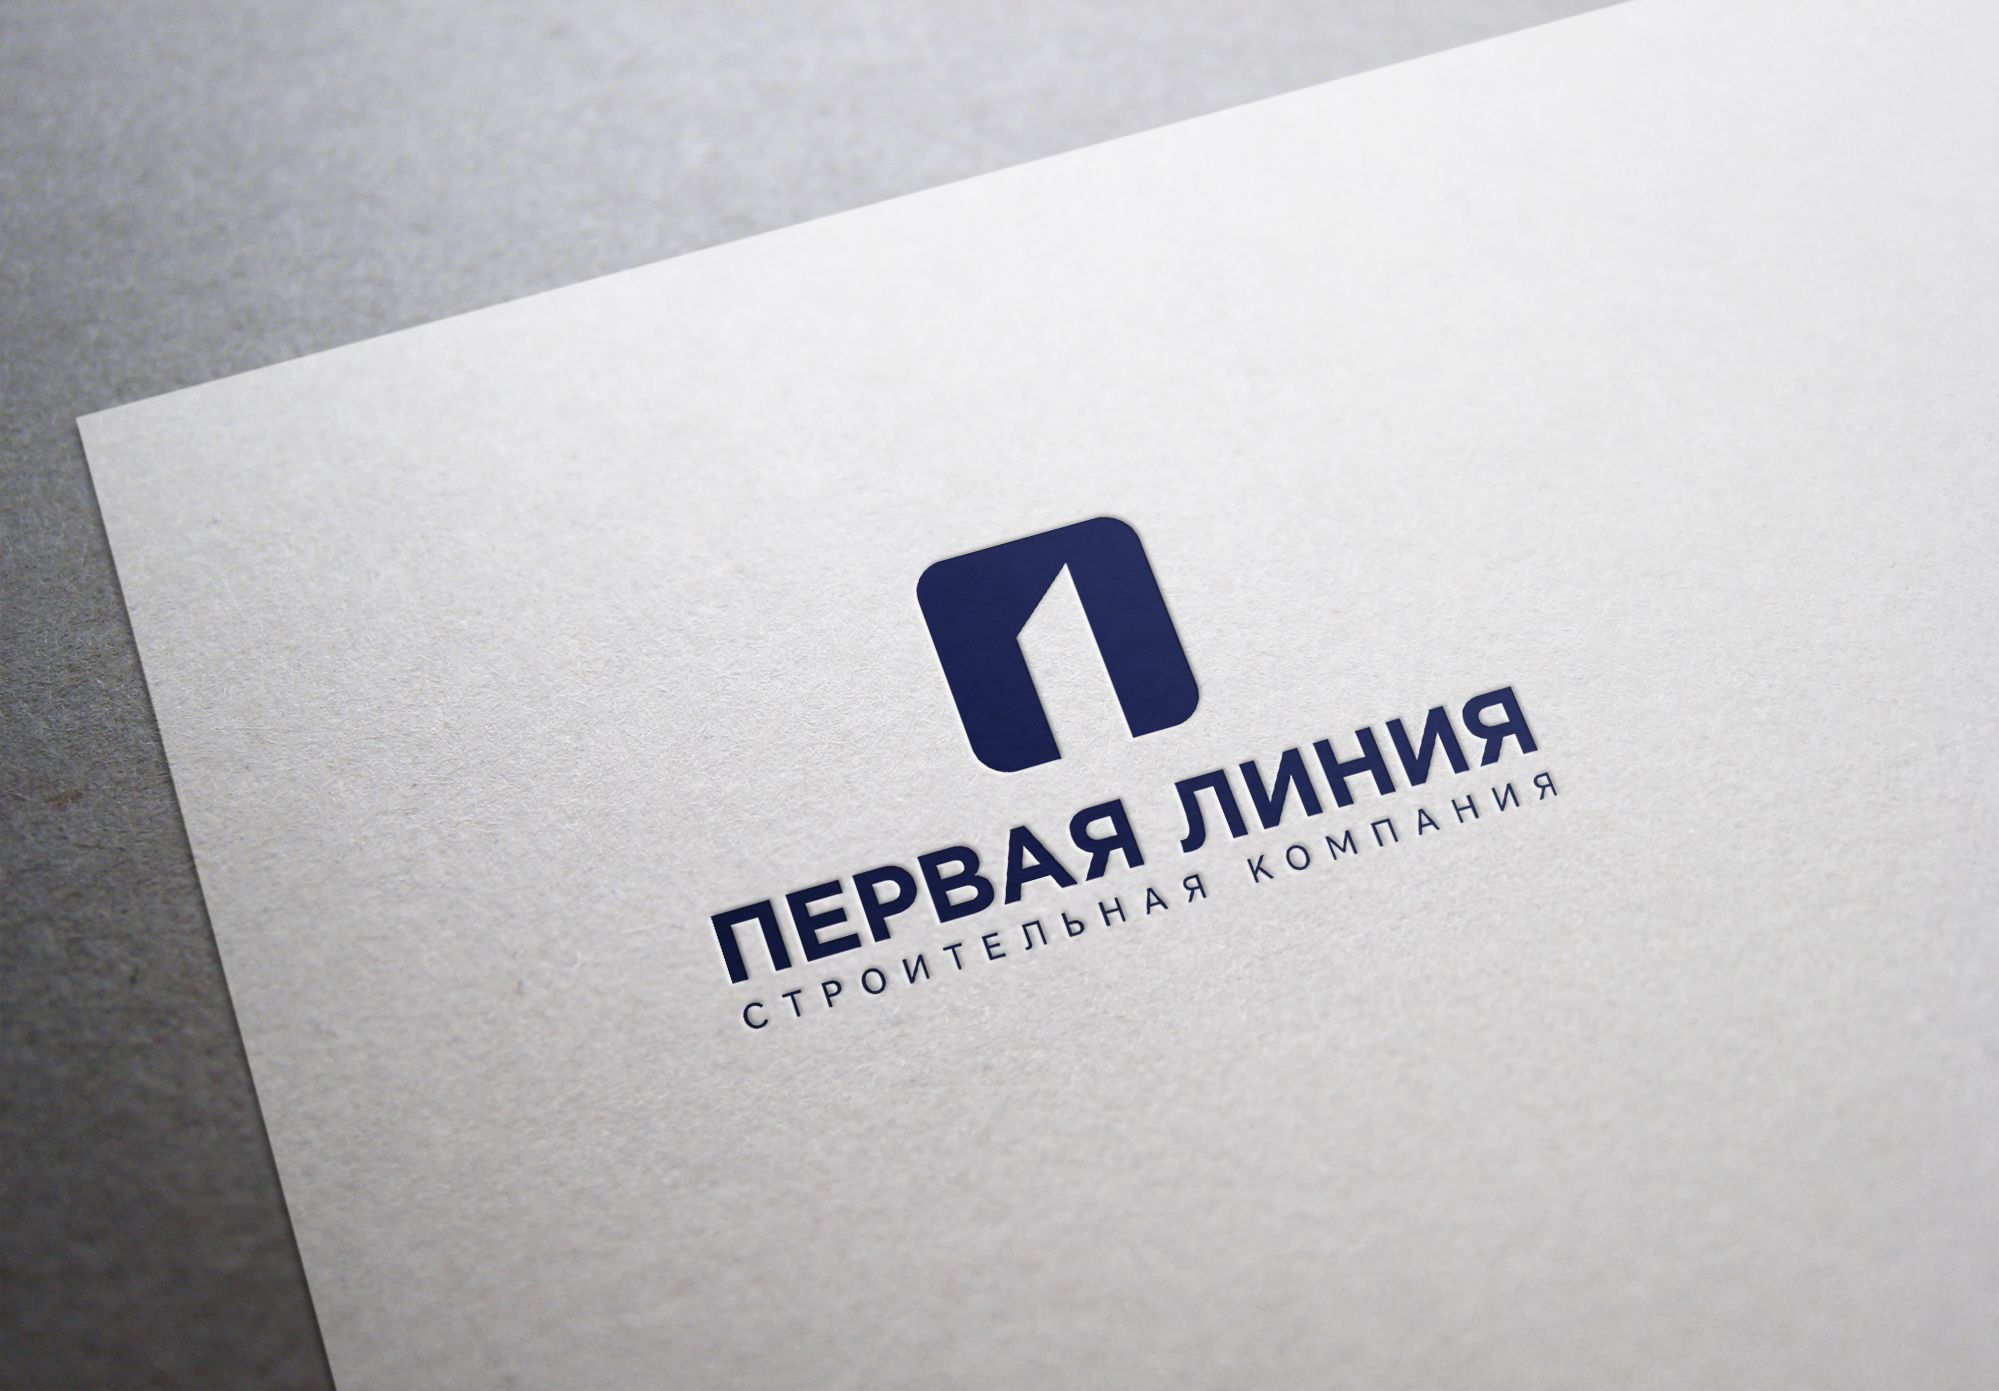 Логотип строительной компании - дизайнер U4po4mak